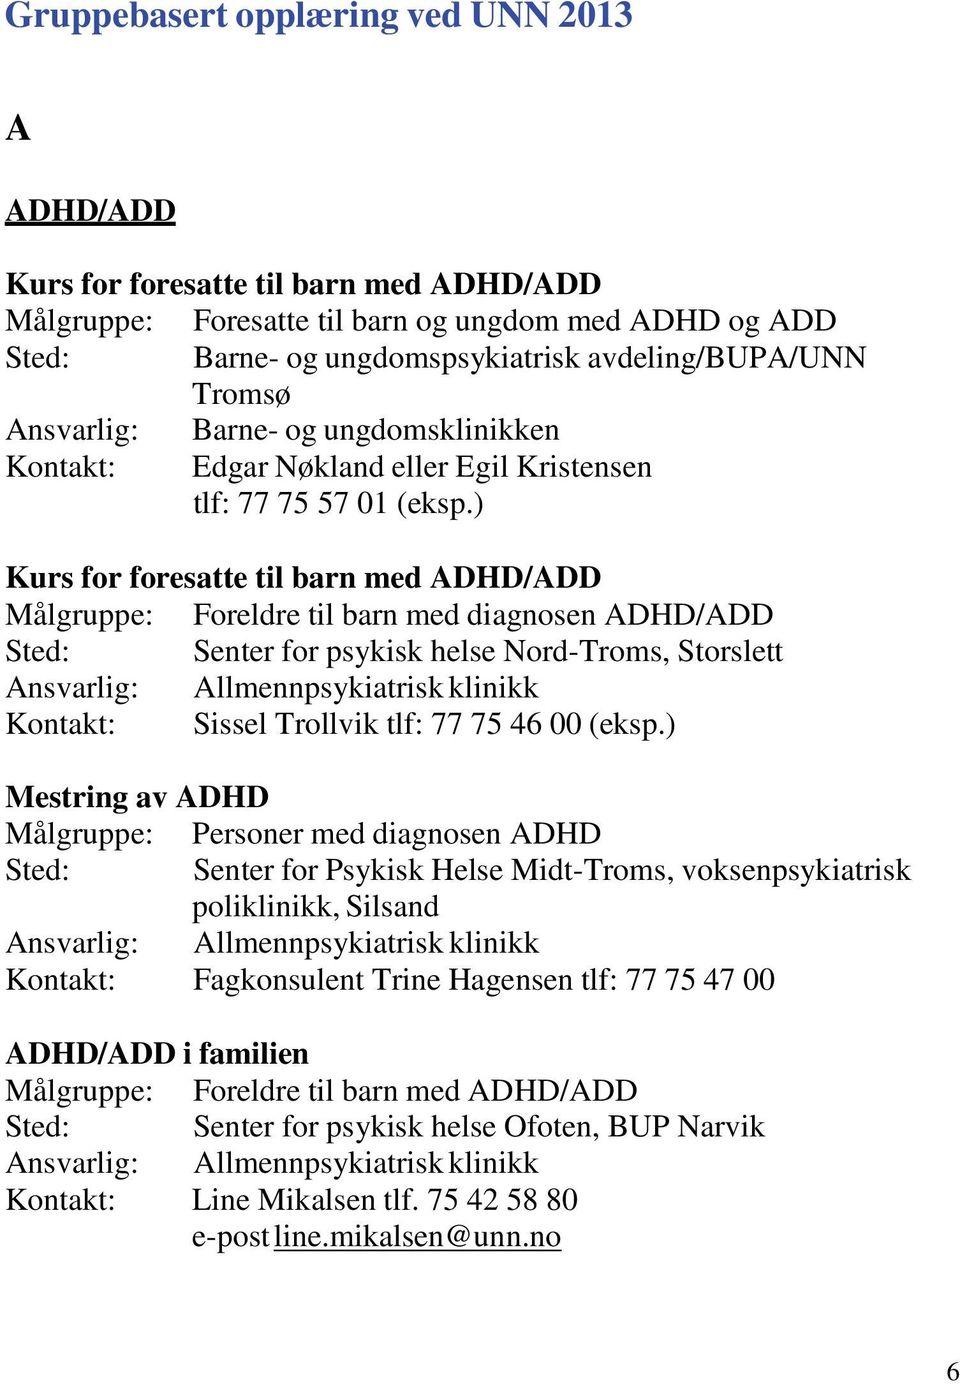 ) Kurs for foresatte til barn med ADHD/ADD Målgruppe: Foreldre til barn med diagnosen ADHD/ADD Sted: Senter for psykisk helse Nord-Troms, Storslett Kontakt: Sissel Trollvik tlf: 77 75 46 00 (eksp.